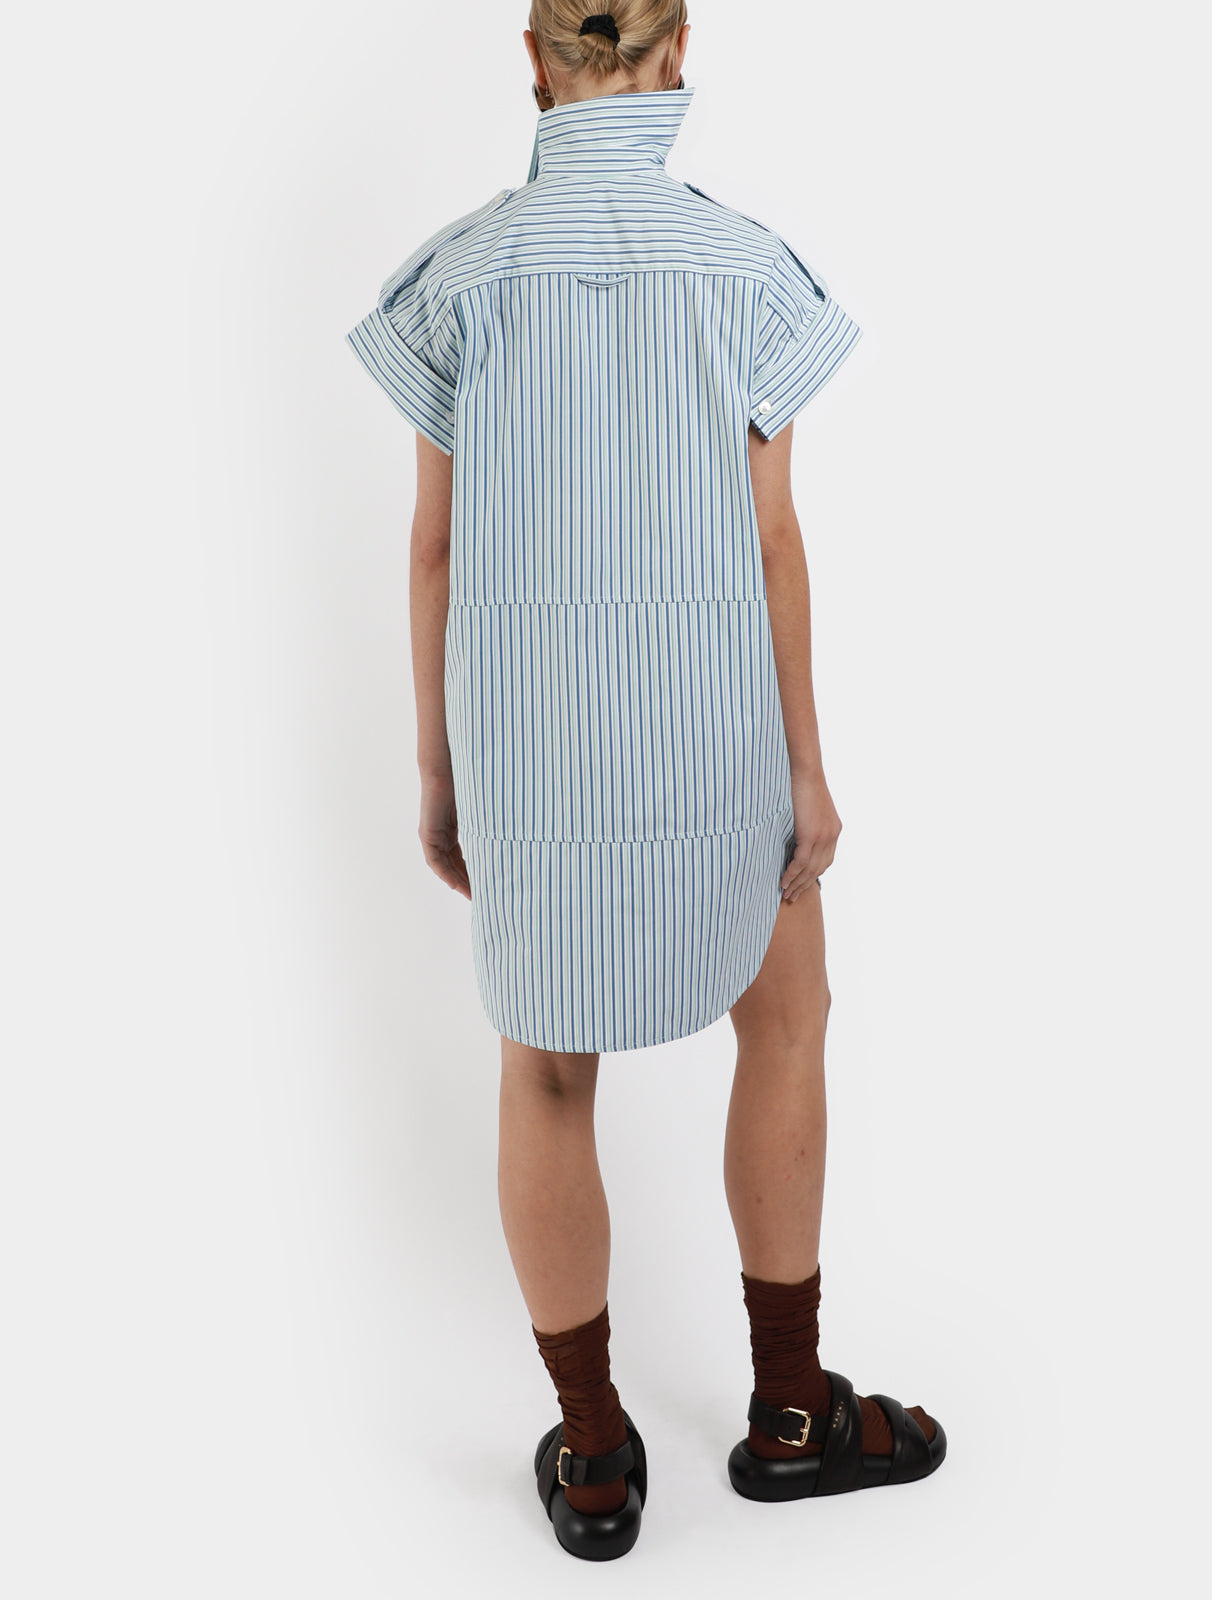 Deconstructed Stripe Shirt Dress